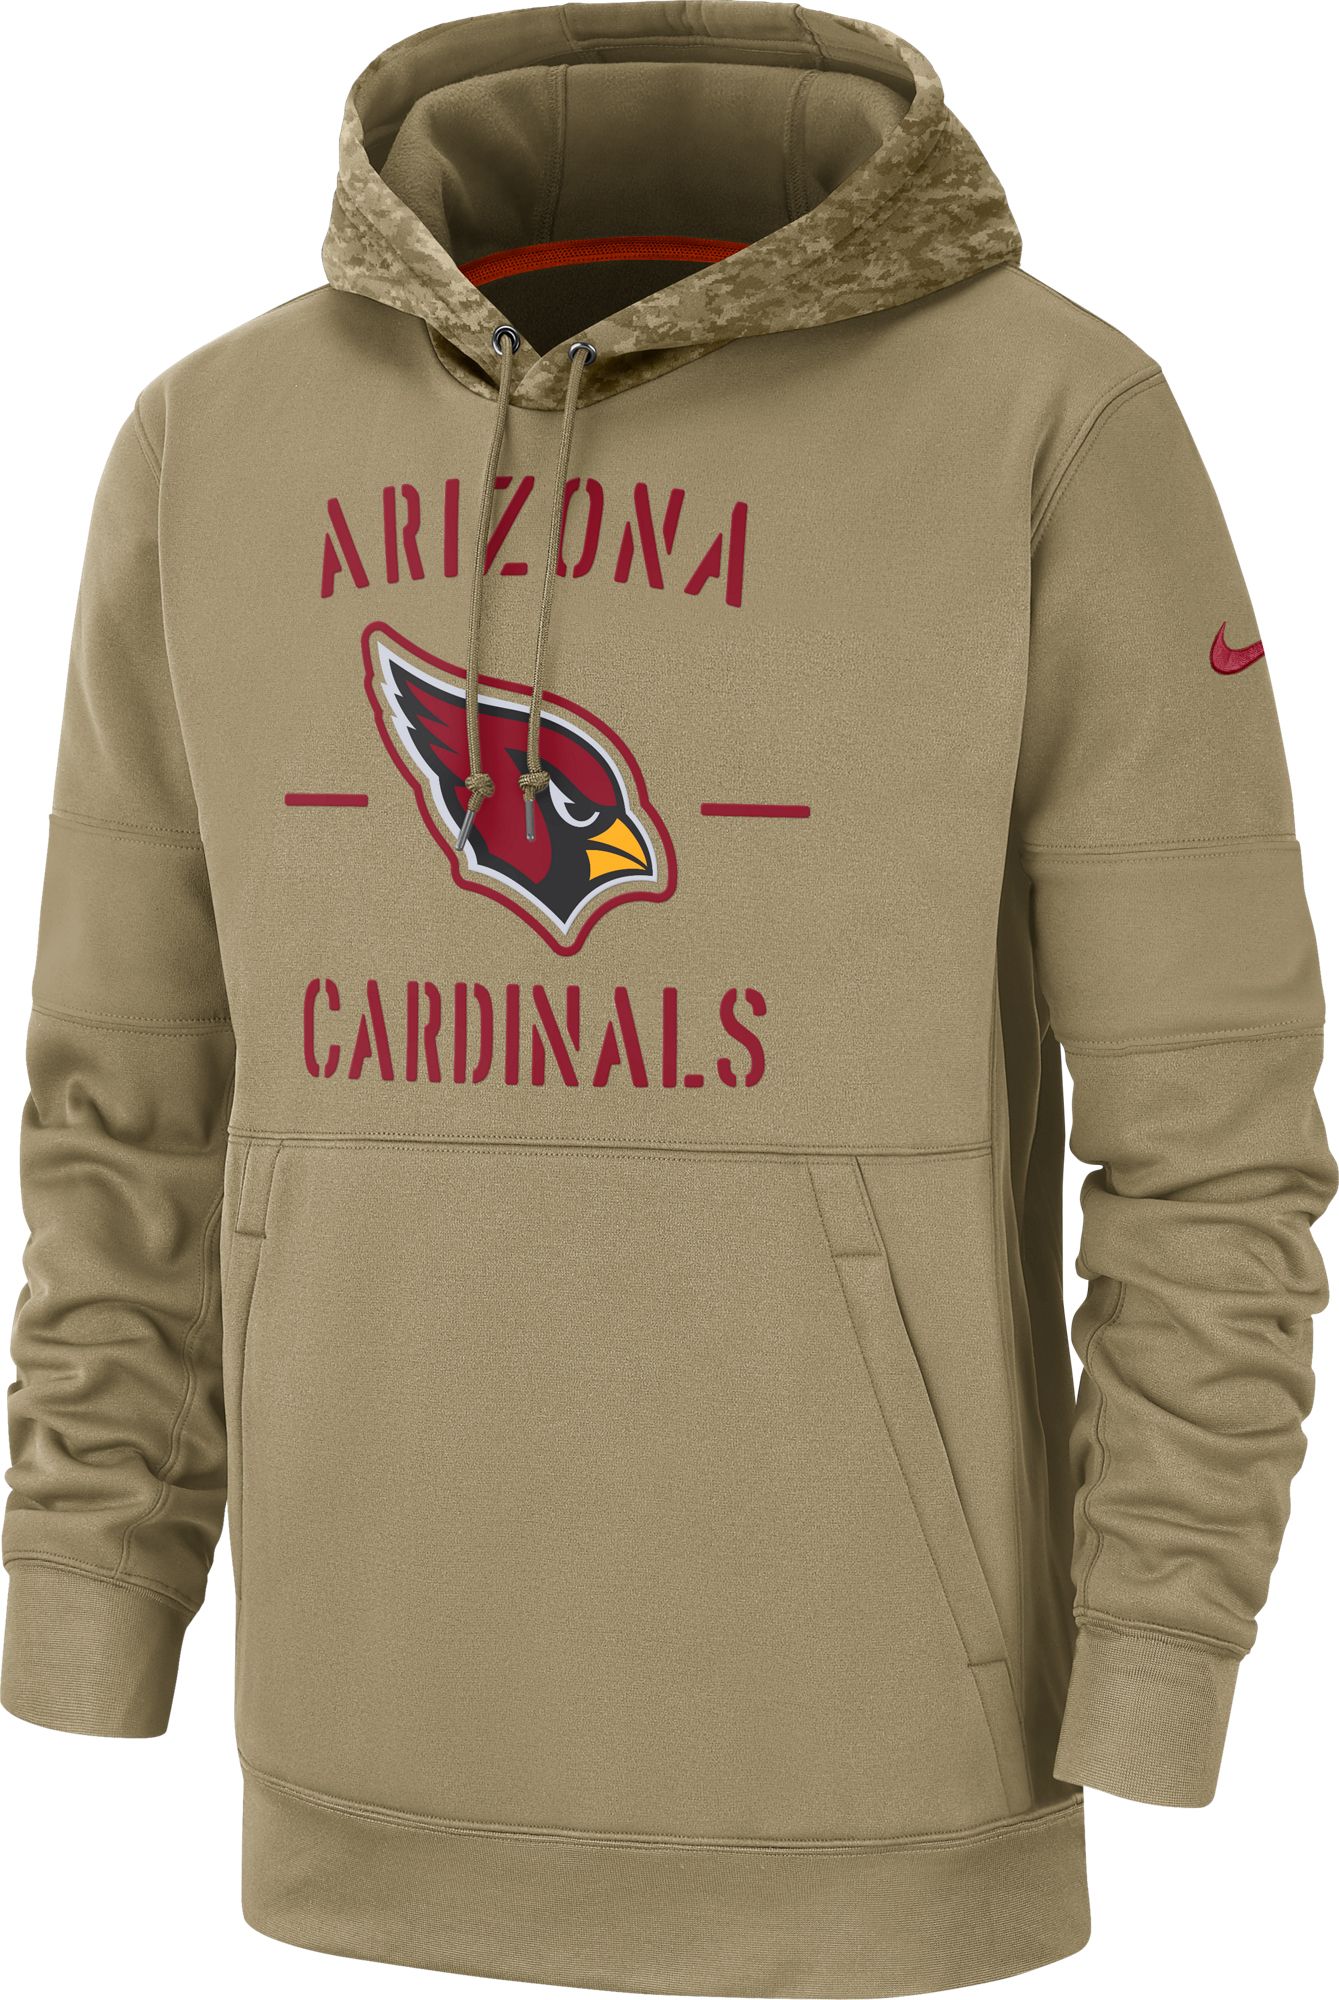 az cardinals camo hoodie | www 